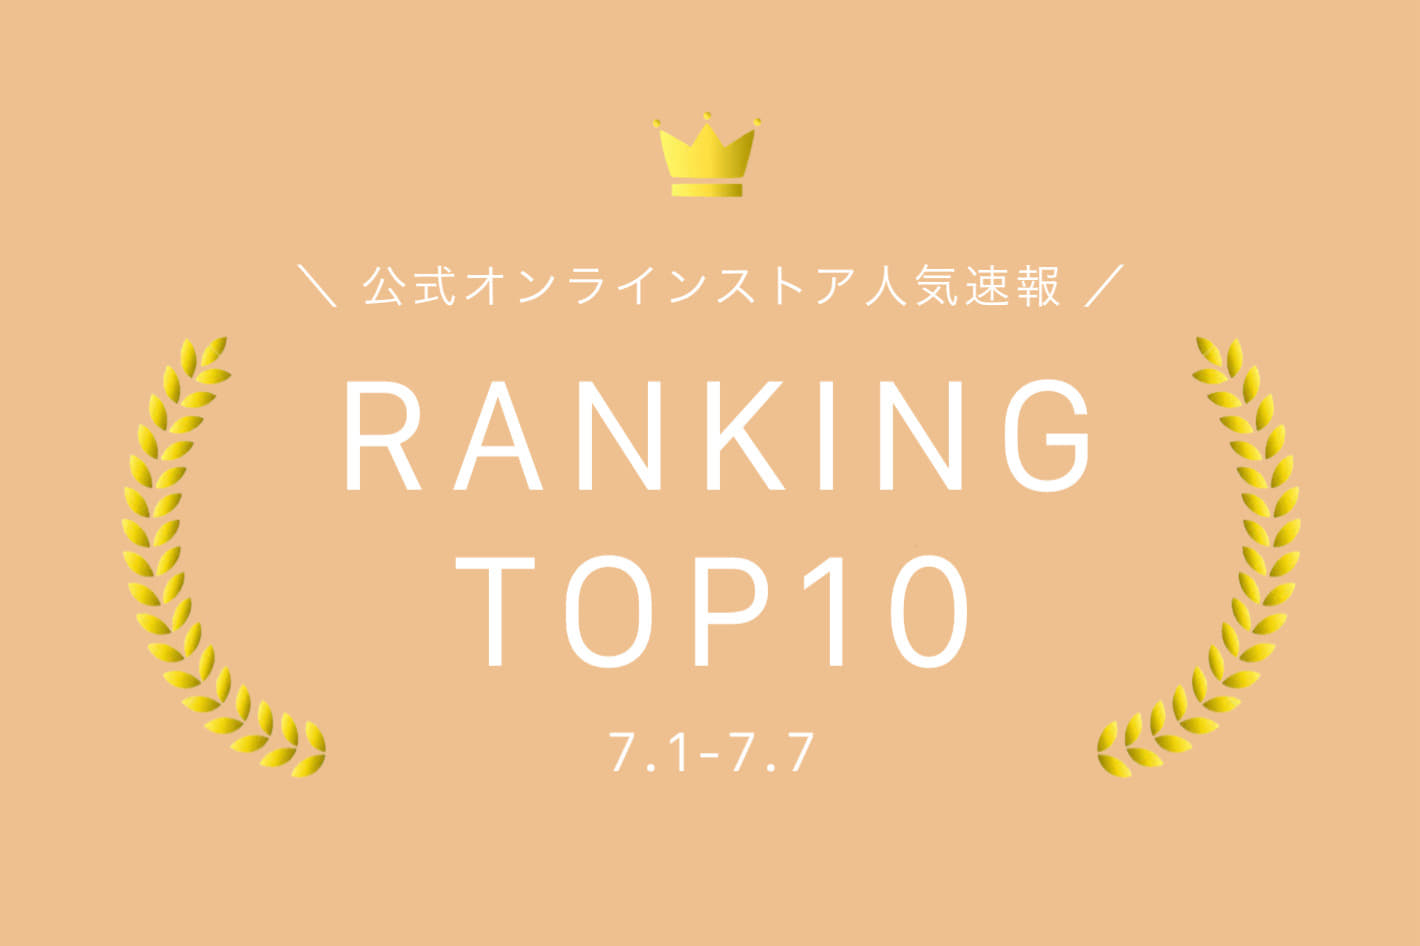 Kastane 【7.1-7.7】WEEKLY RANKING TOP10